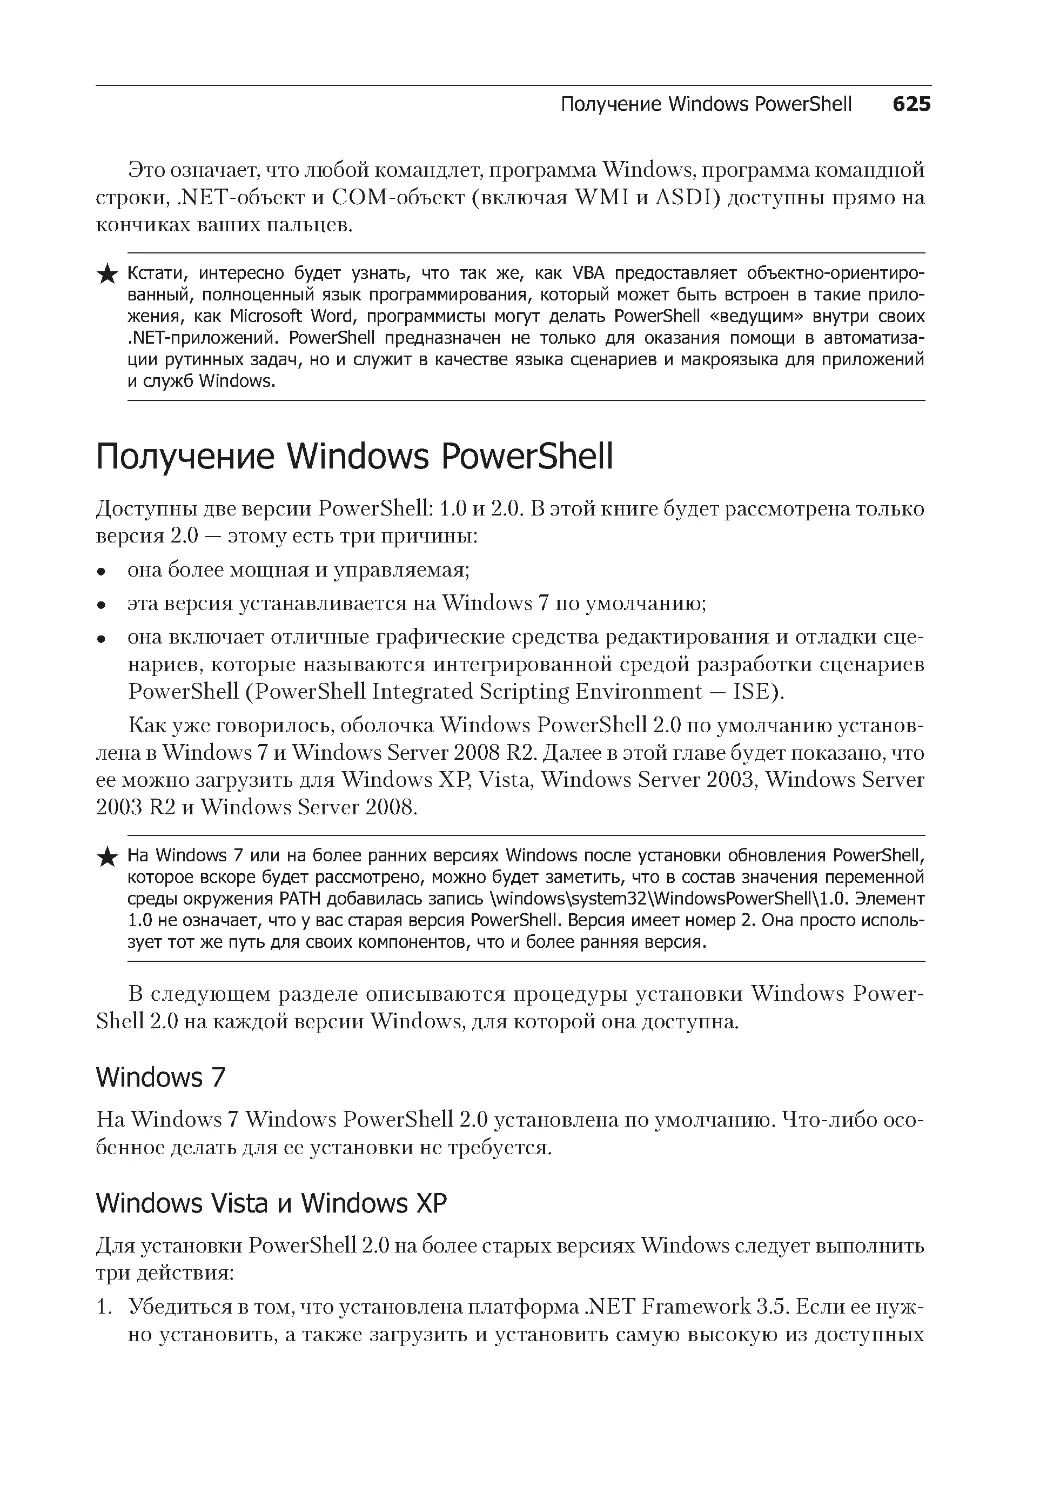 Получение Windows PowerShell
Windows Vista и Windows XP